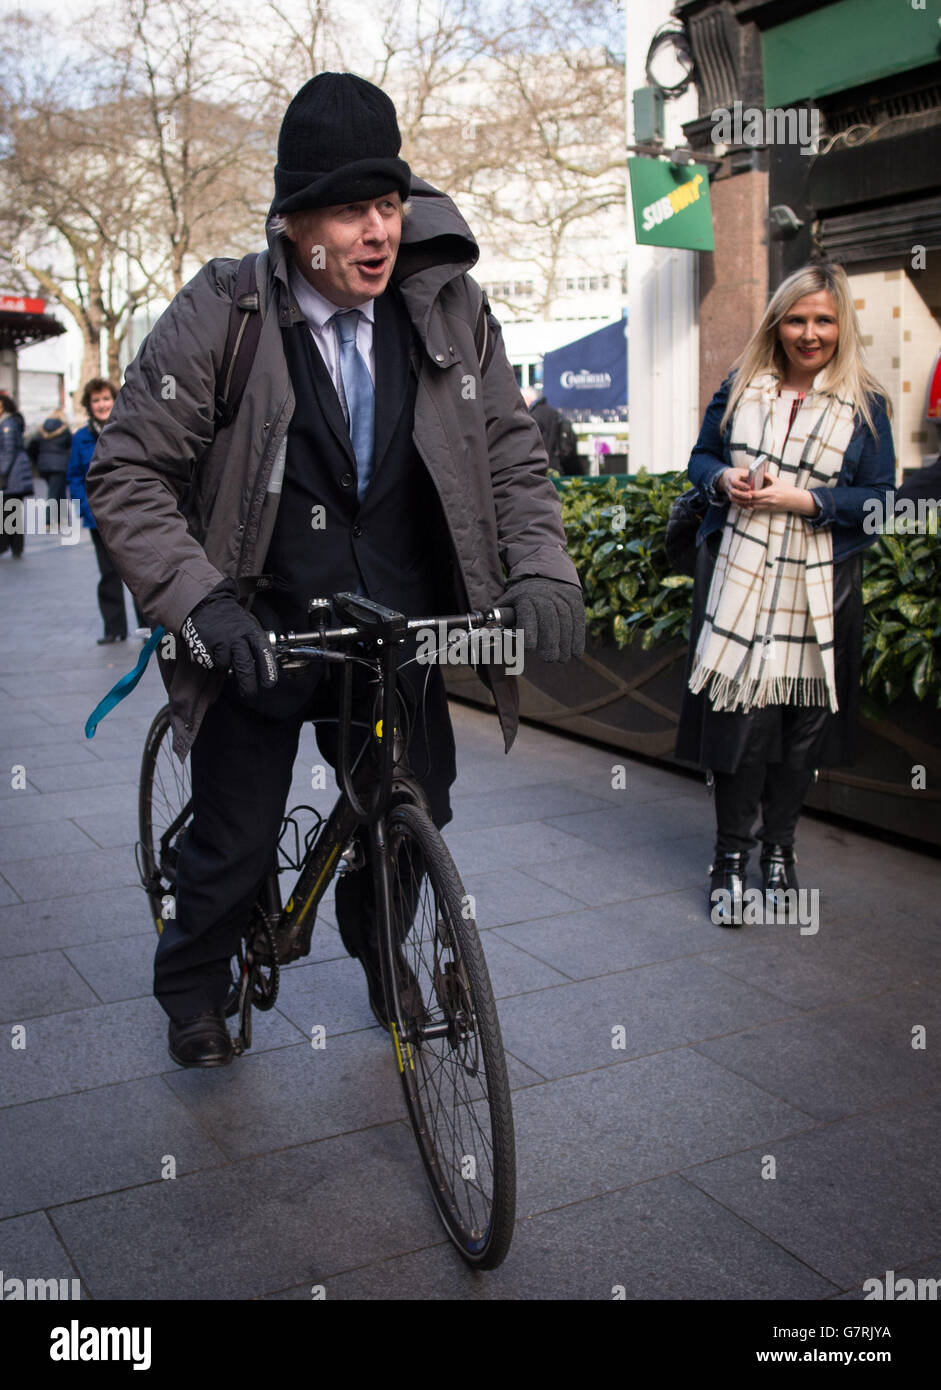 Sindaco di Londra Boris Johnson in bicicletta, lasciando gli studi della Global radio nel centro di Londra, dopo aver presentato regolarmente il suo programma telefonico per la radio LBC, dopo che David Cameron ha commentato che sta escludendo un terzo mandato come primo Ministro. Foto Stock